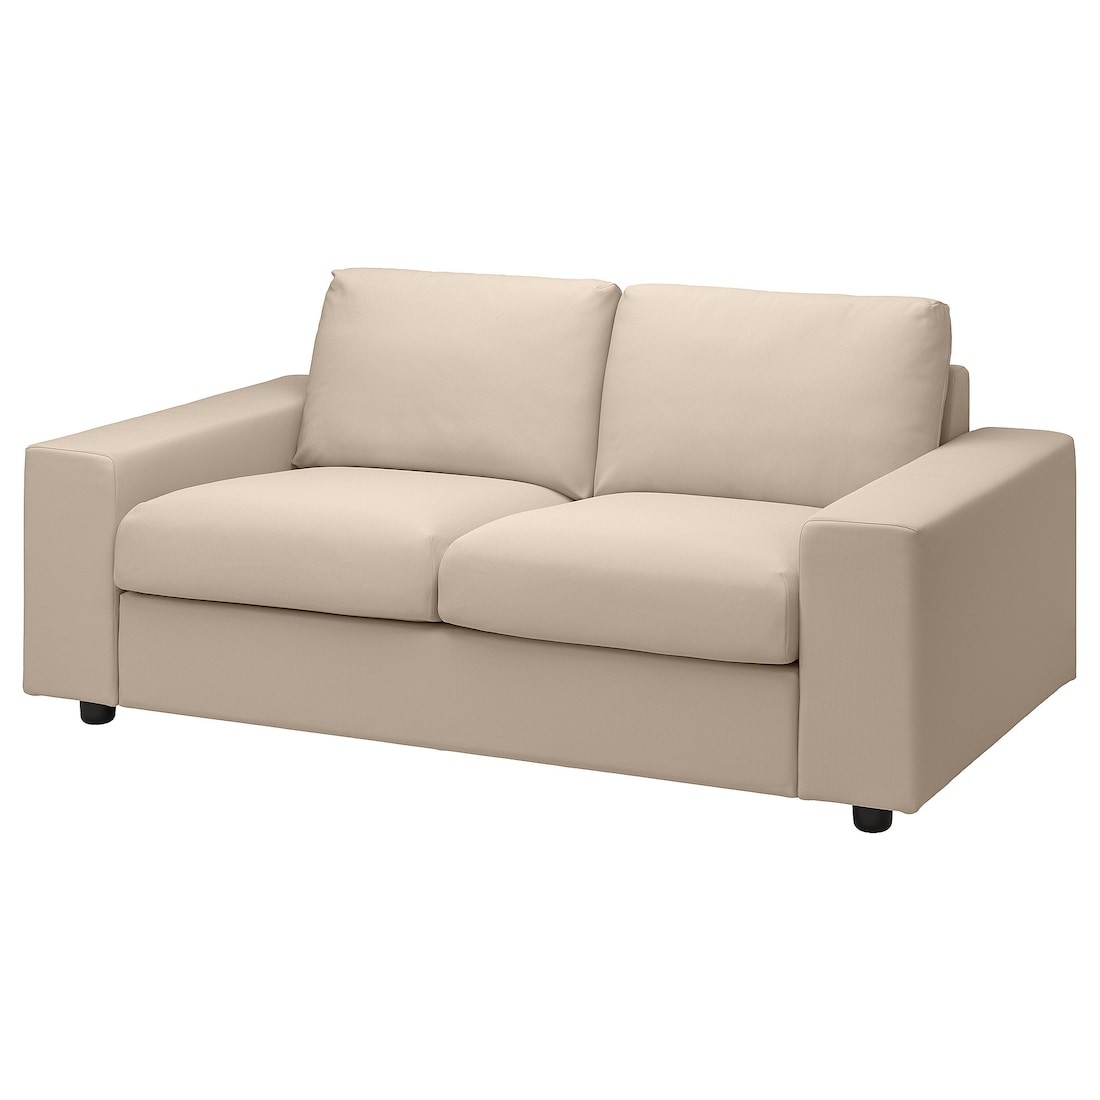 VIMLE ВИМЛЕ 2-местный диван, с широкими подлокотниками / Hallarp бежевый